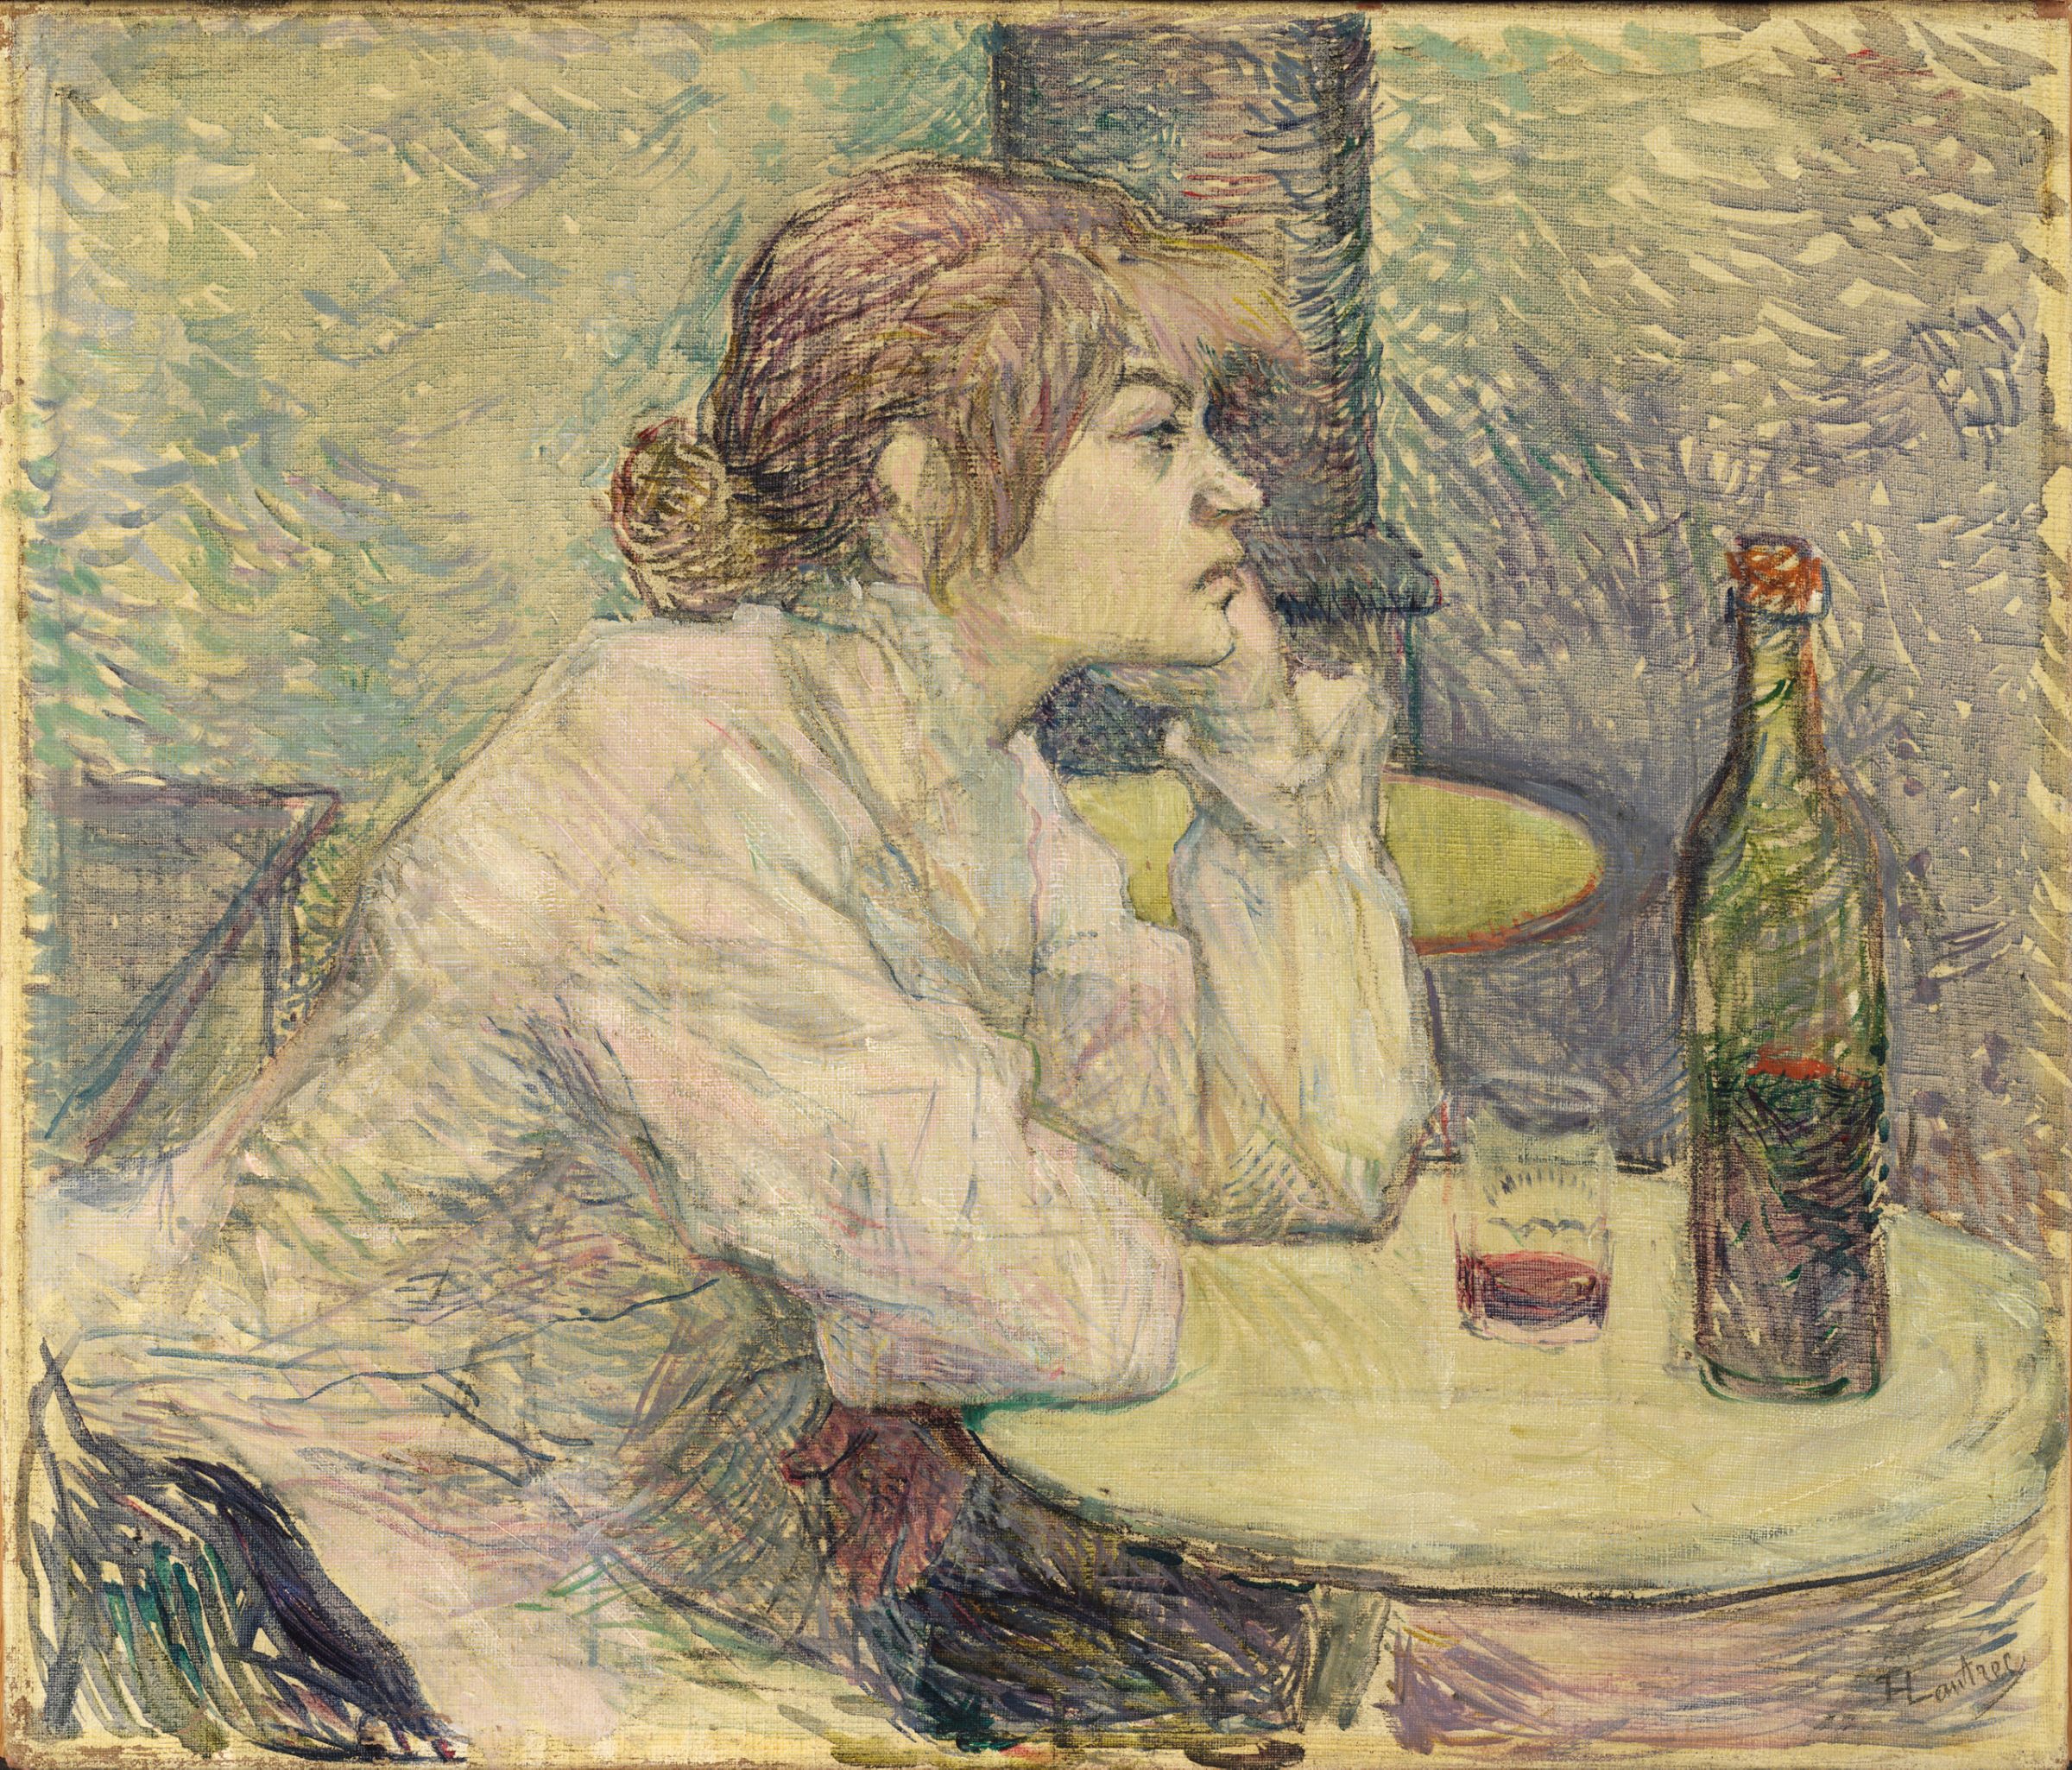 Kac (Suzanne Valadon) by Henri de Toulouse-Lautrec - 1887-89 - 55,3 x 47 cm 